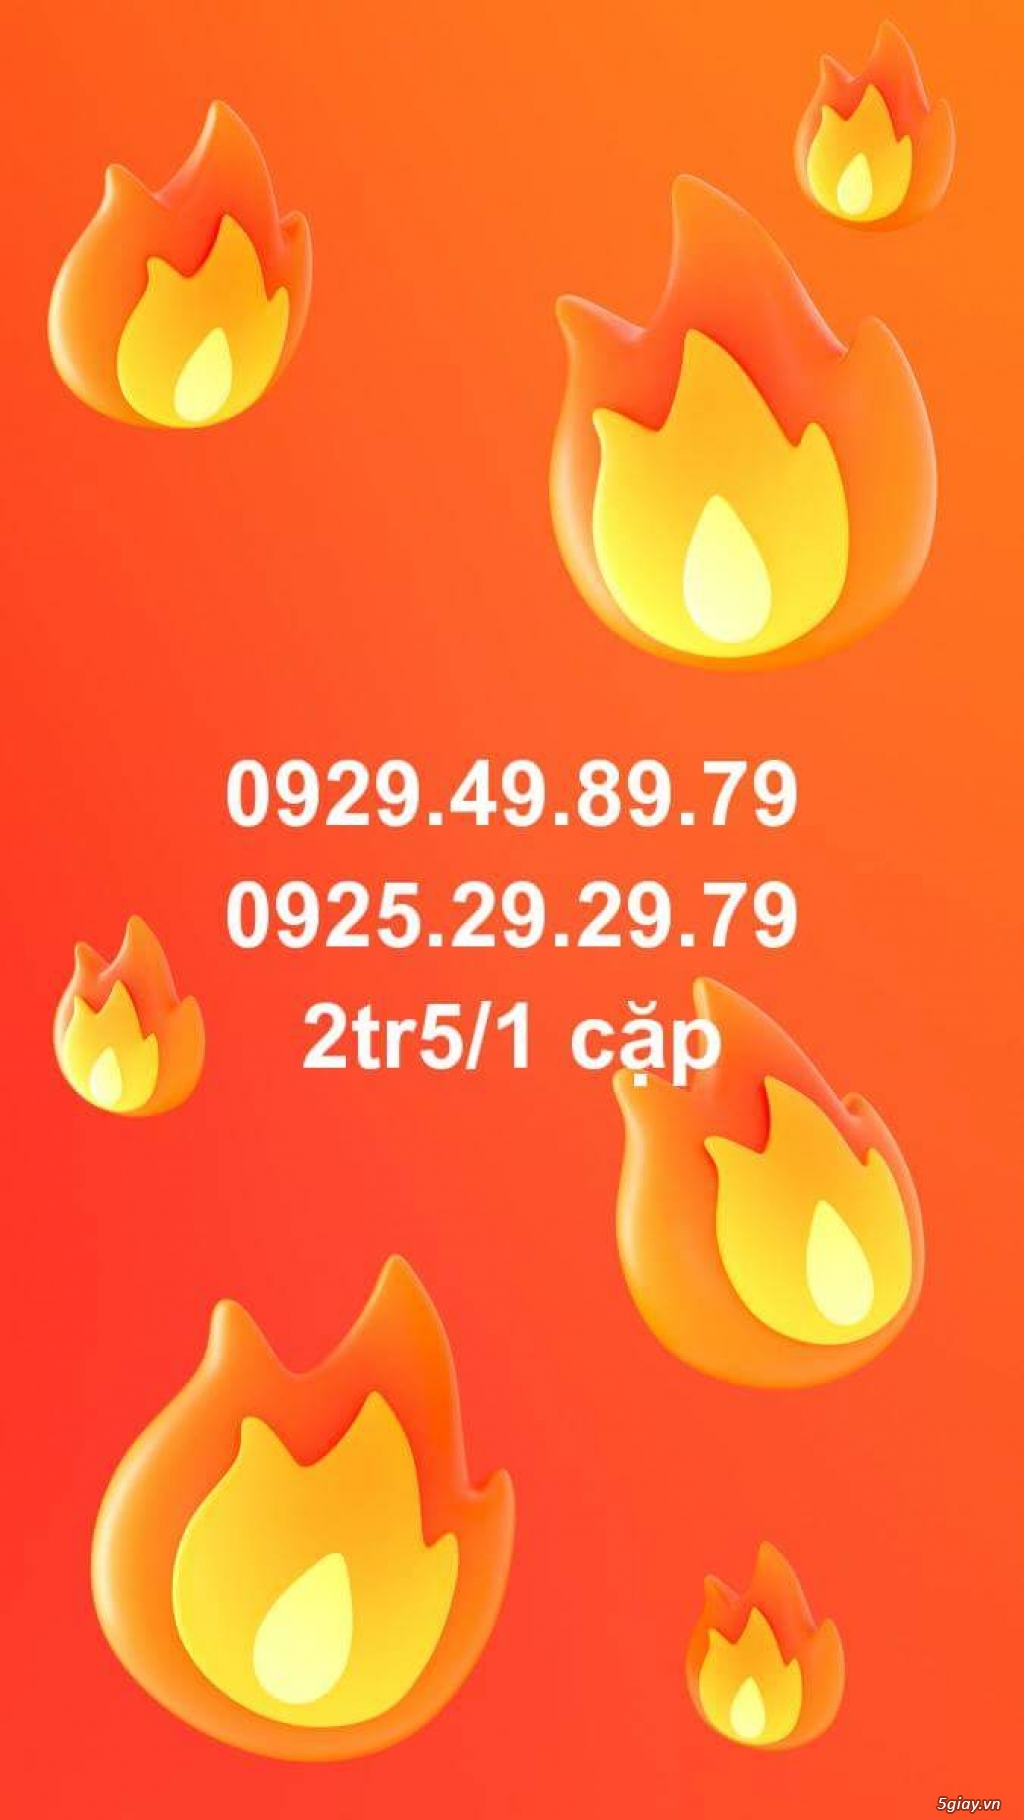 Cần bán nhiều sim Vietnam Mobile rất đẹp: 056.79.79.796- 056.89.89.896 - 4